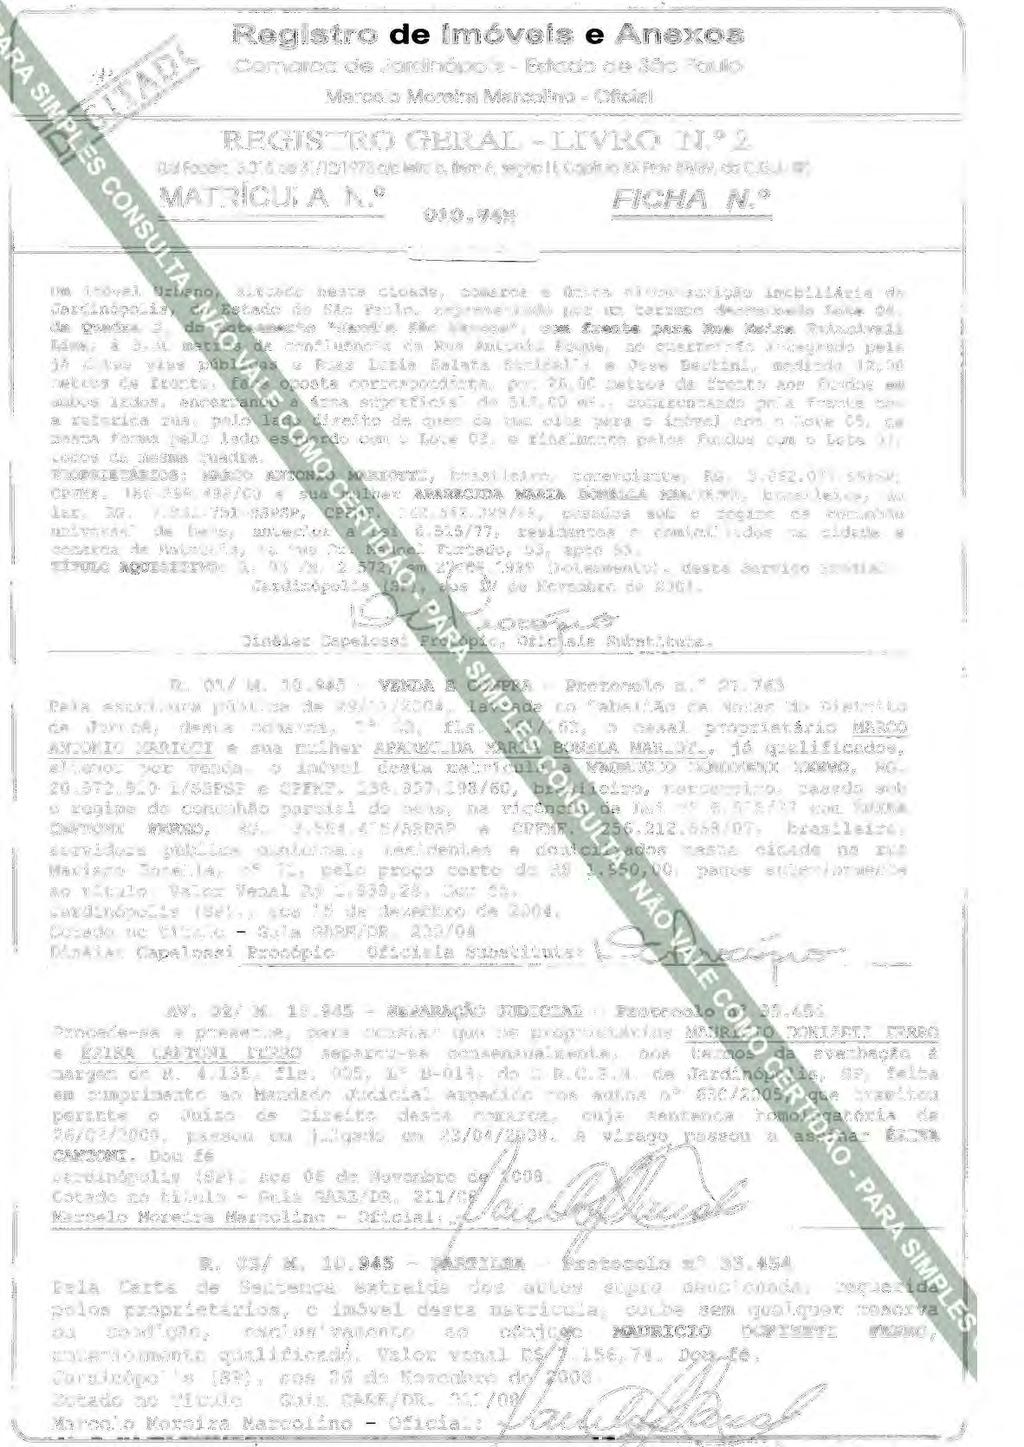 Registro de Imóveis e Anexos Comarca de Jardlnópolls - Estado de São Paulo Marcelo Moreira Marcolino - Oficial REGISTRO GERAL- LIVRO N. 0 2 (Lei Federal6.